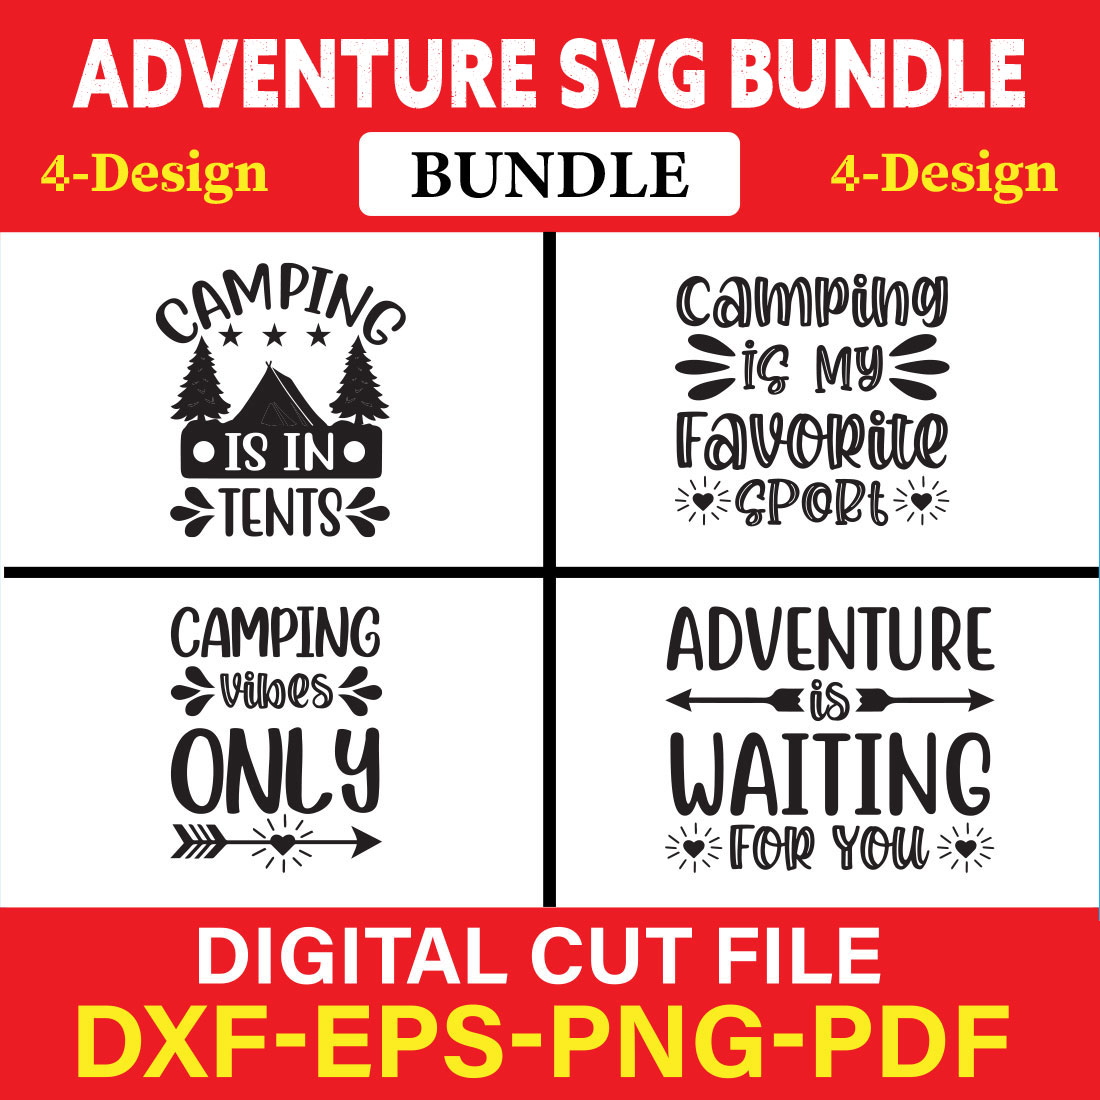 Adventure T-shirt Design Bundle Vol-1 cover image.